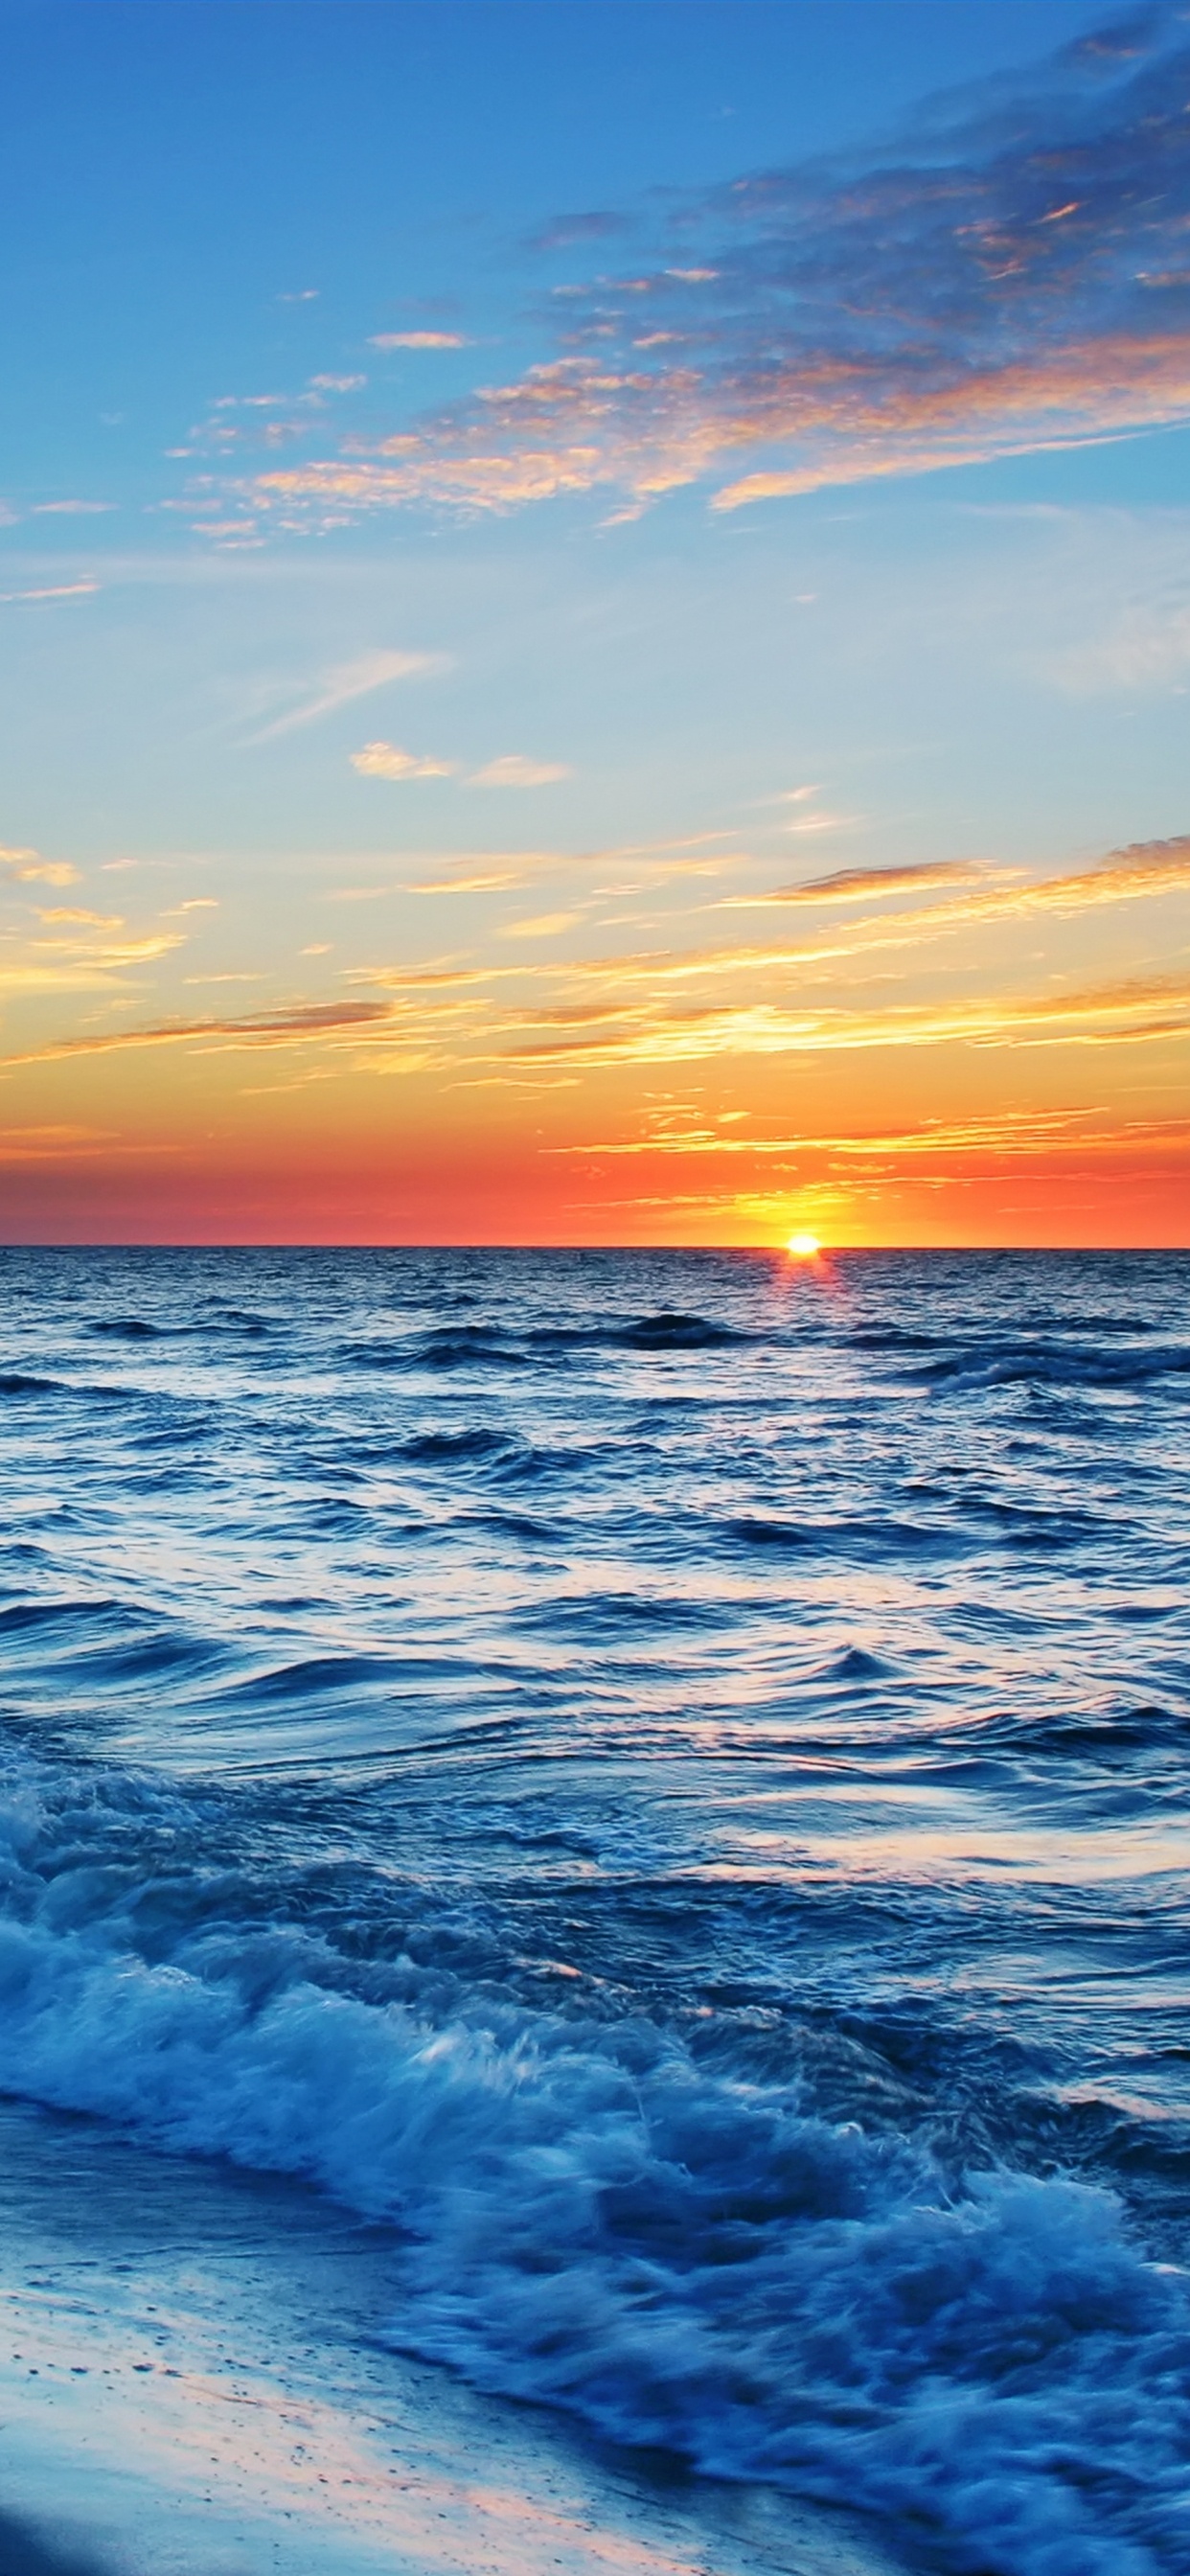 Meereswellen, Die Während Des Sonnenuntergangs an Land Krachen. Wallpaper in 1242x2688 Resolution